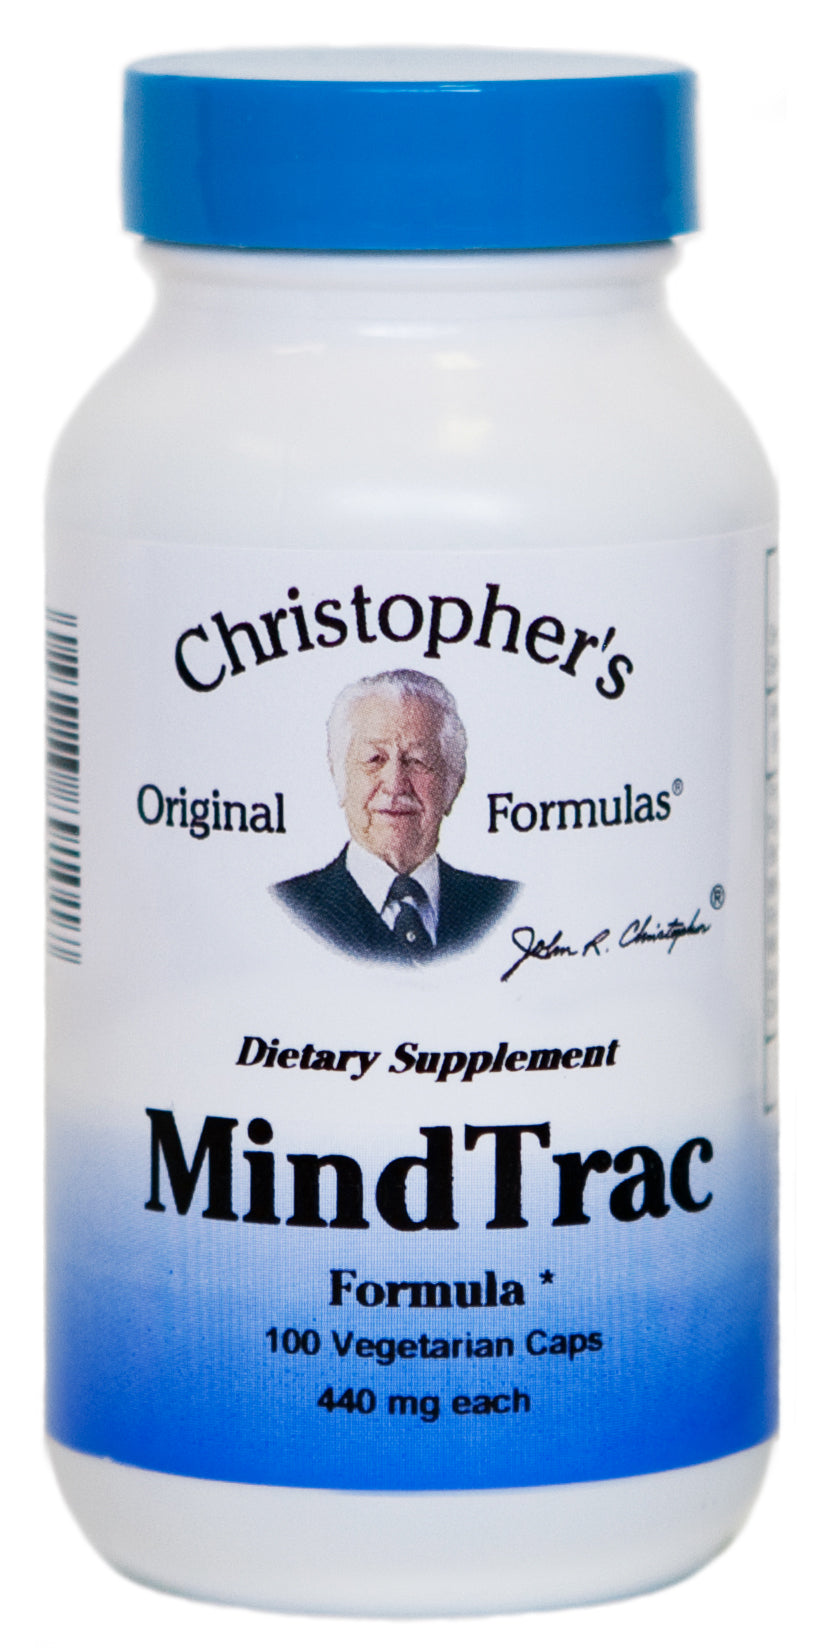 Dr. Christopher's MindTrac Formula